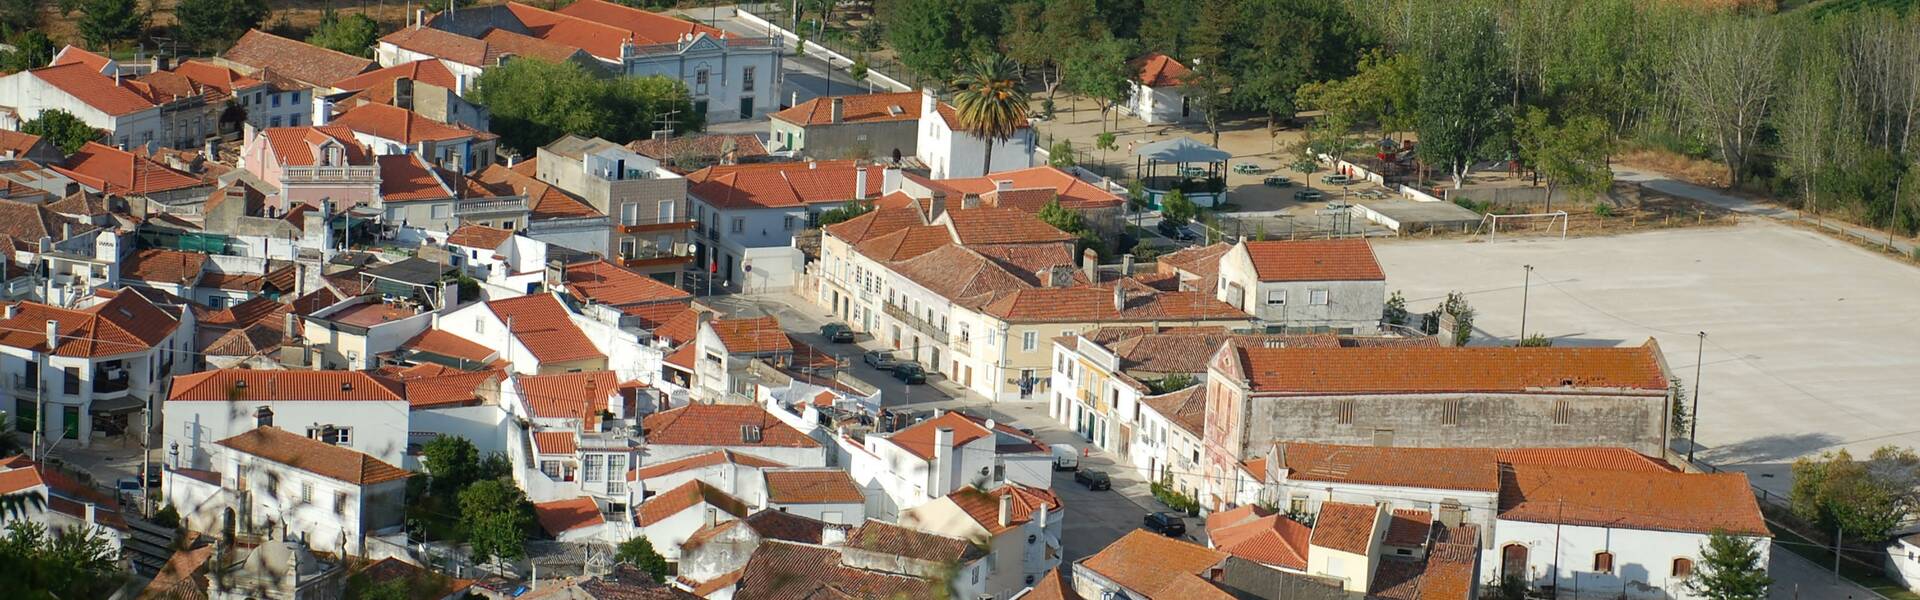 Santarém | Portugal 360°